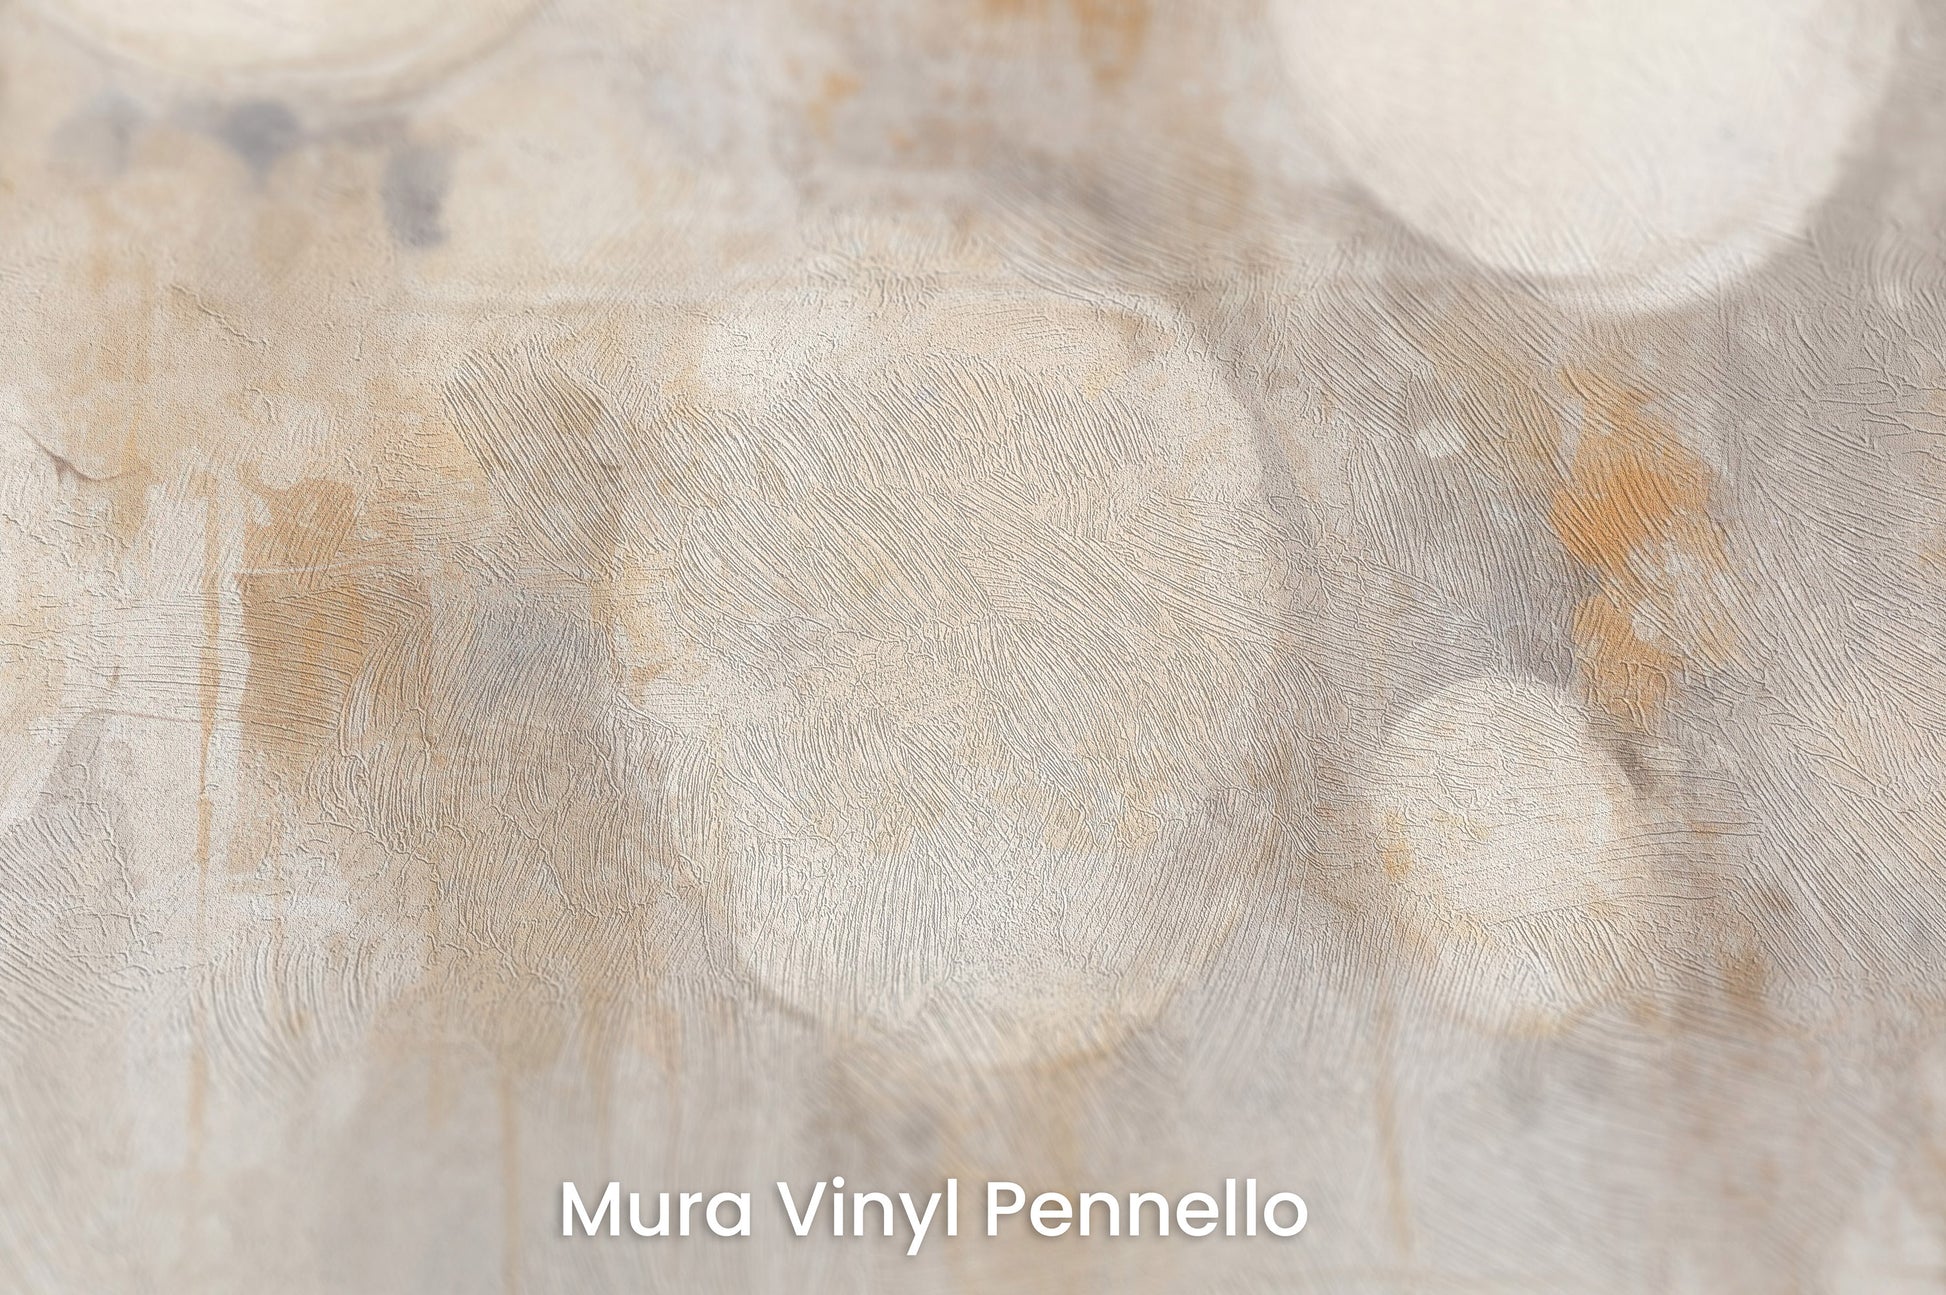 Zbliżenie na artystyczną fototapetę o nazwie LUMINOUS MOONSCAPE ARRAY na podłożu Mura Vinyl Pennello - faktura pociągnięć pędzla malarskiego.